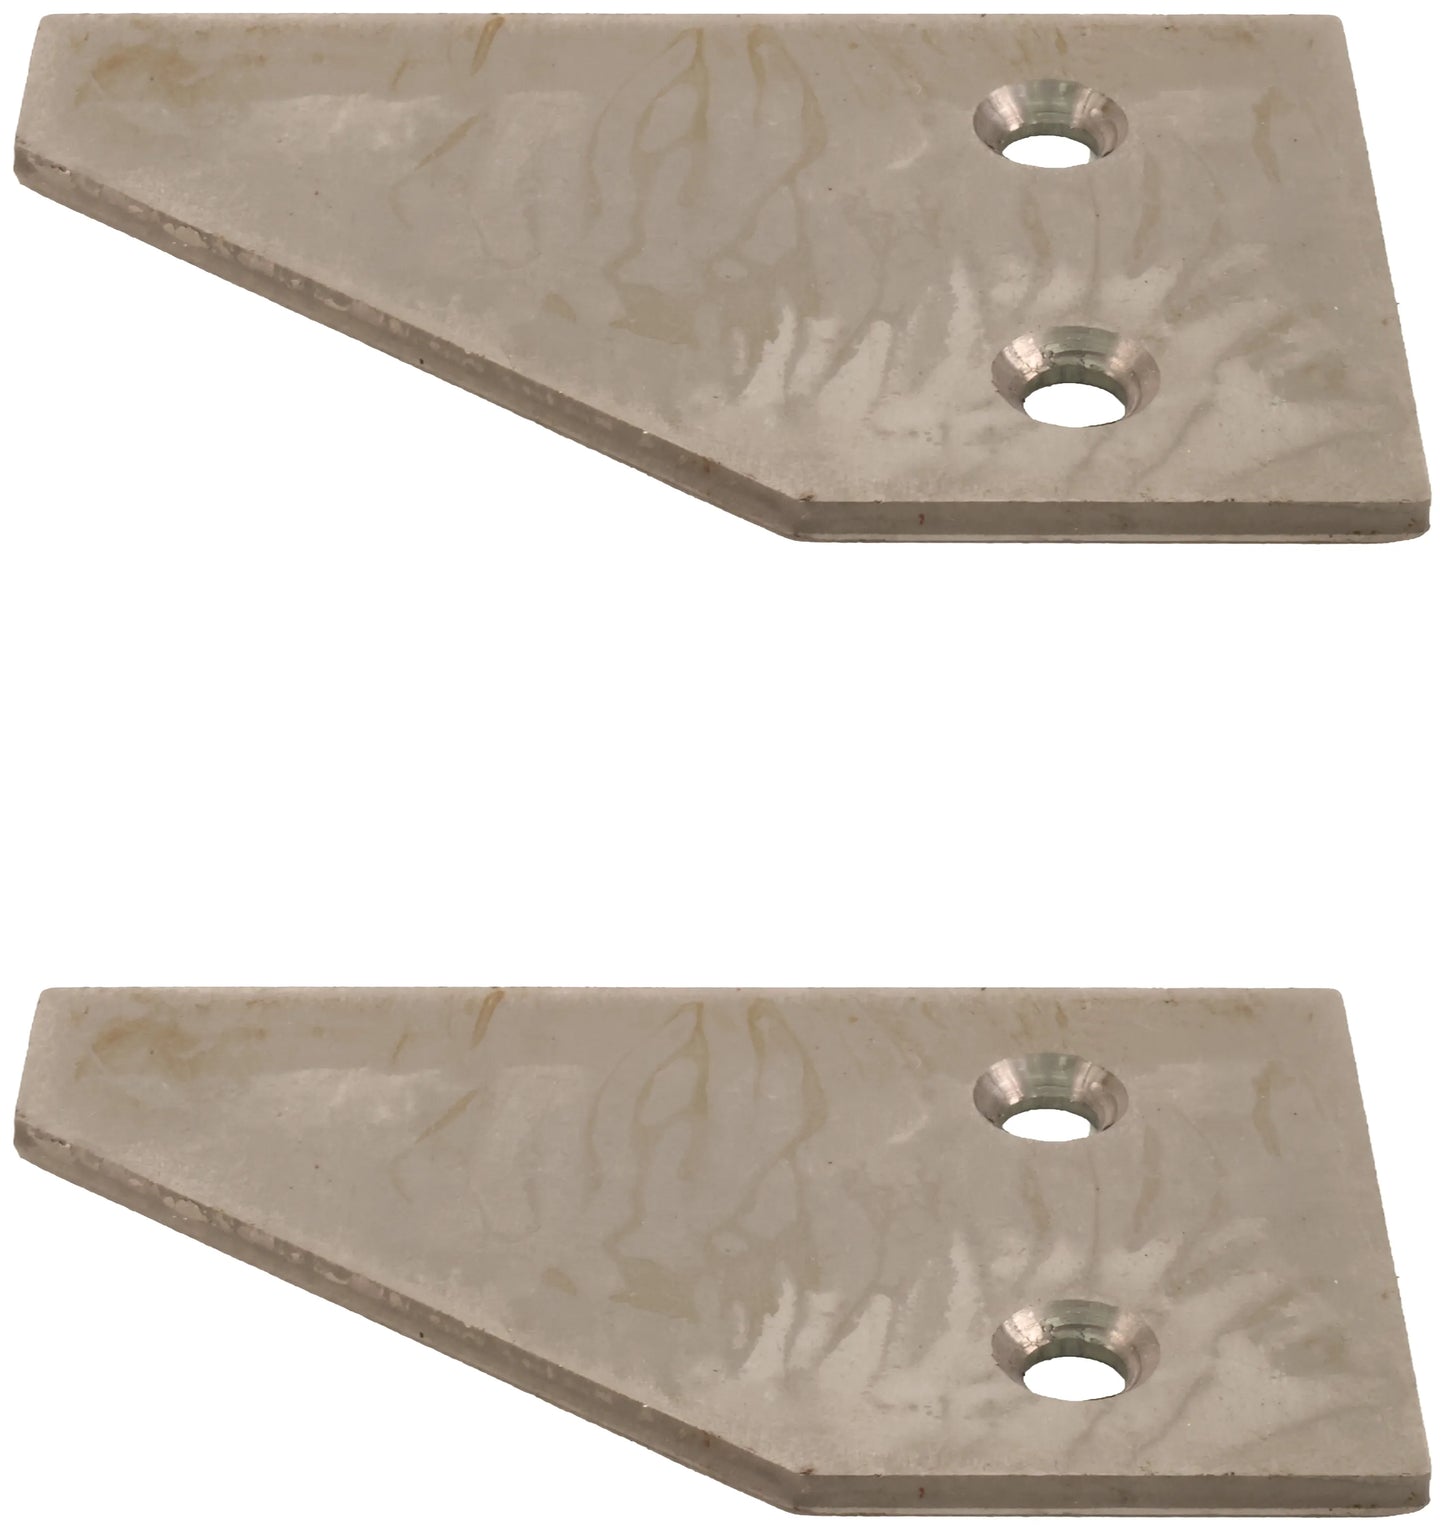 John Deere Original Equipment Half Chrome Knife Section (2-PACK) - H125894